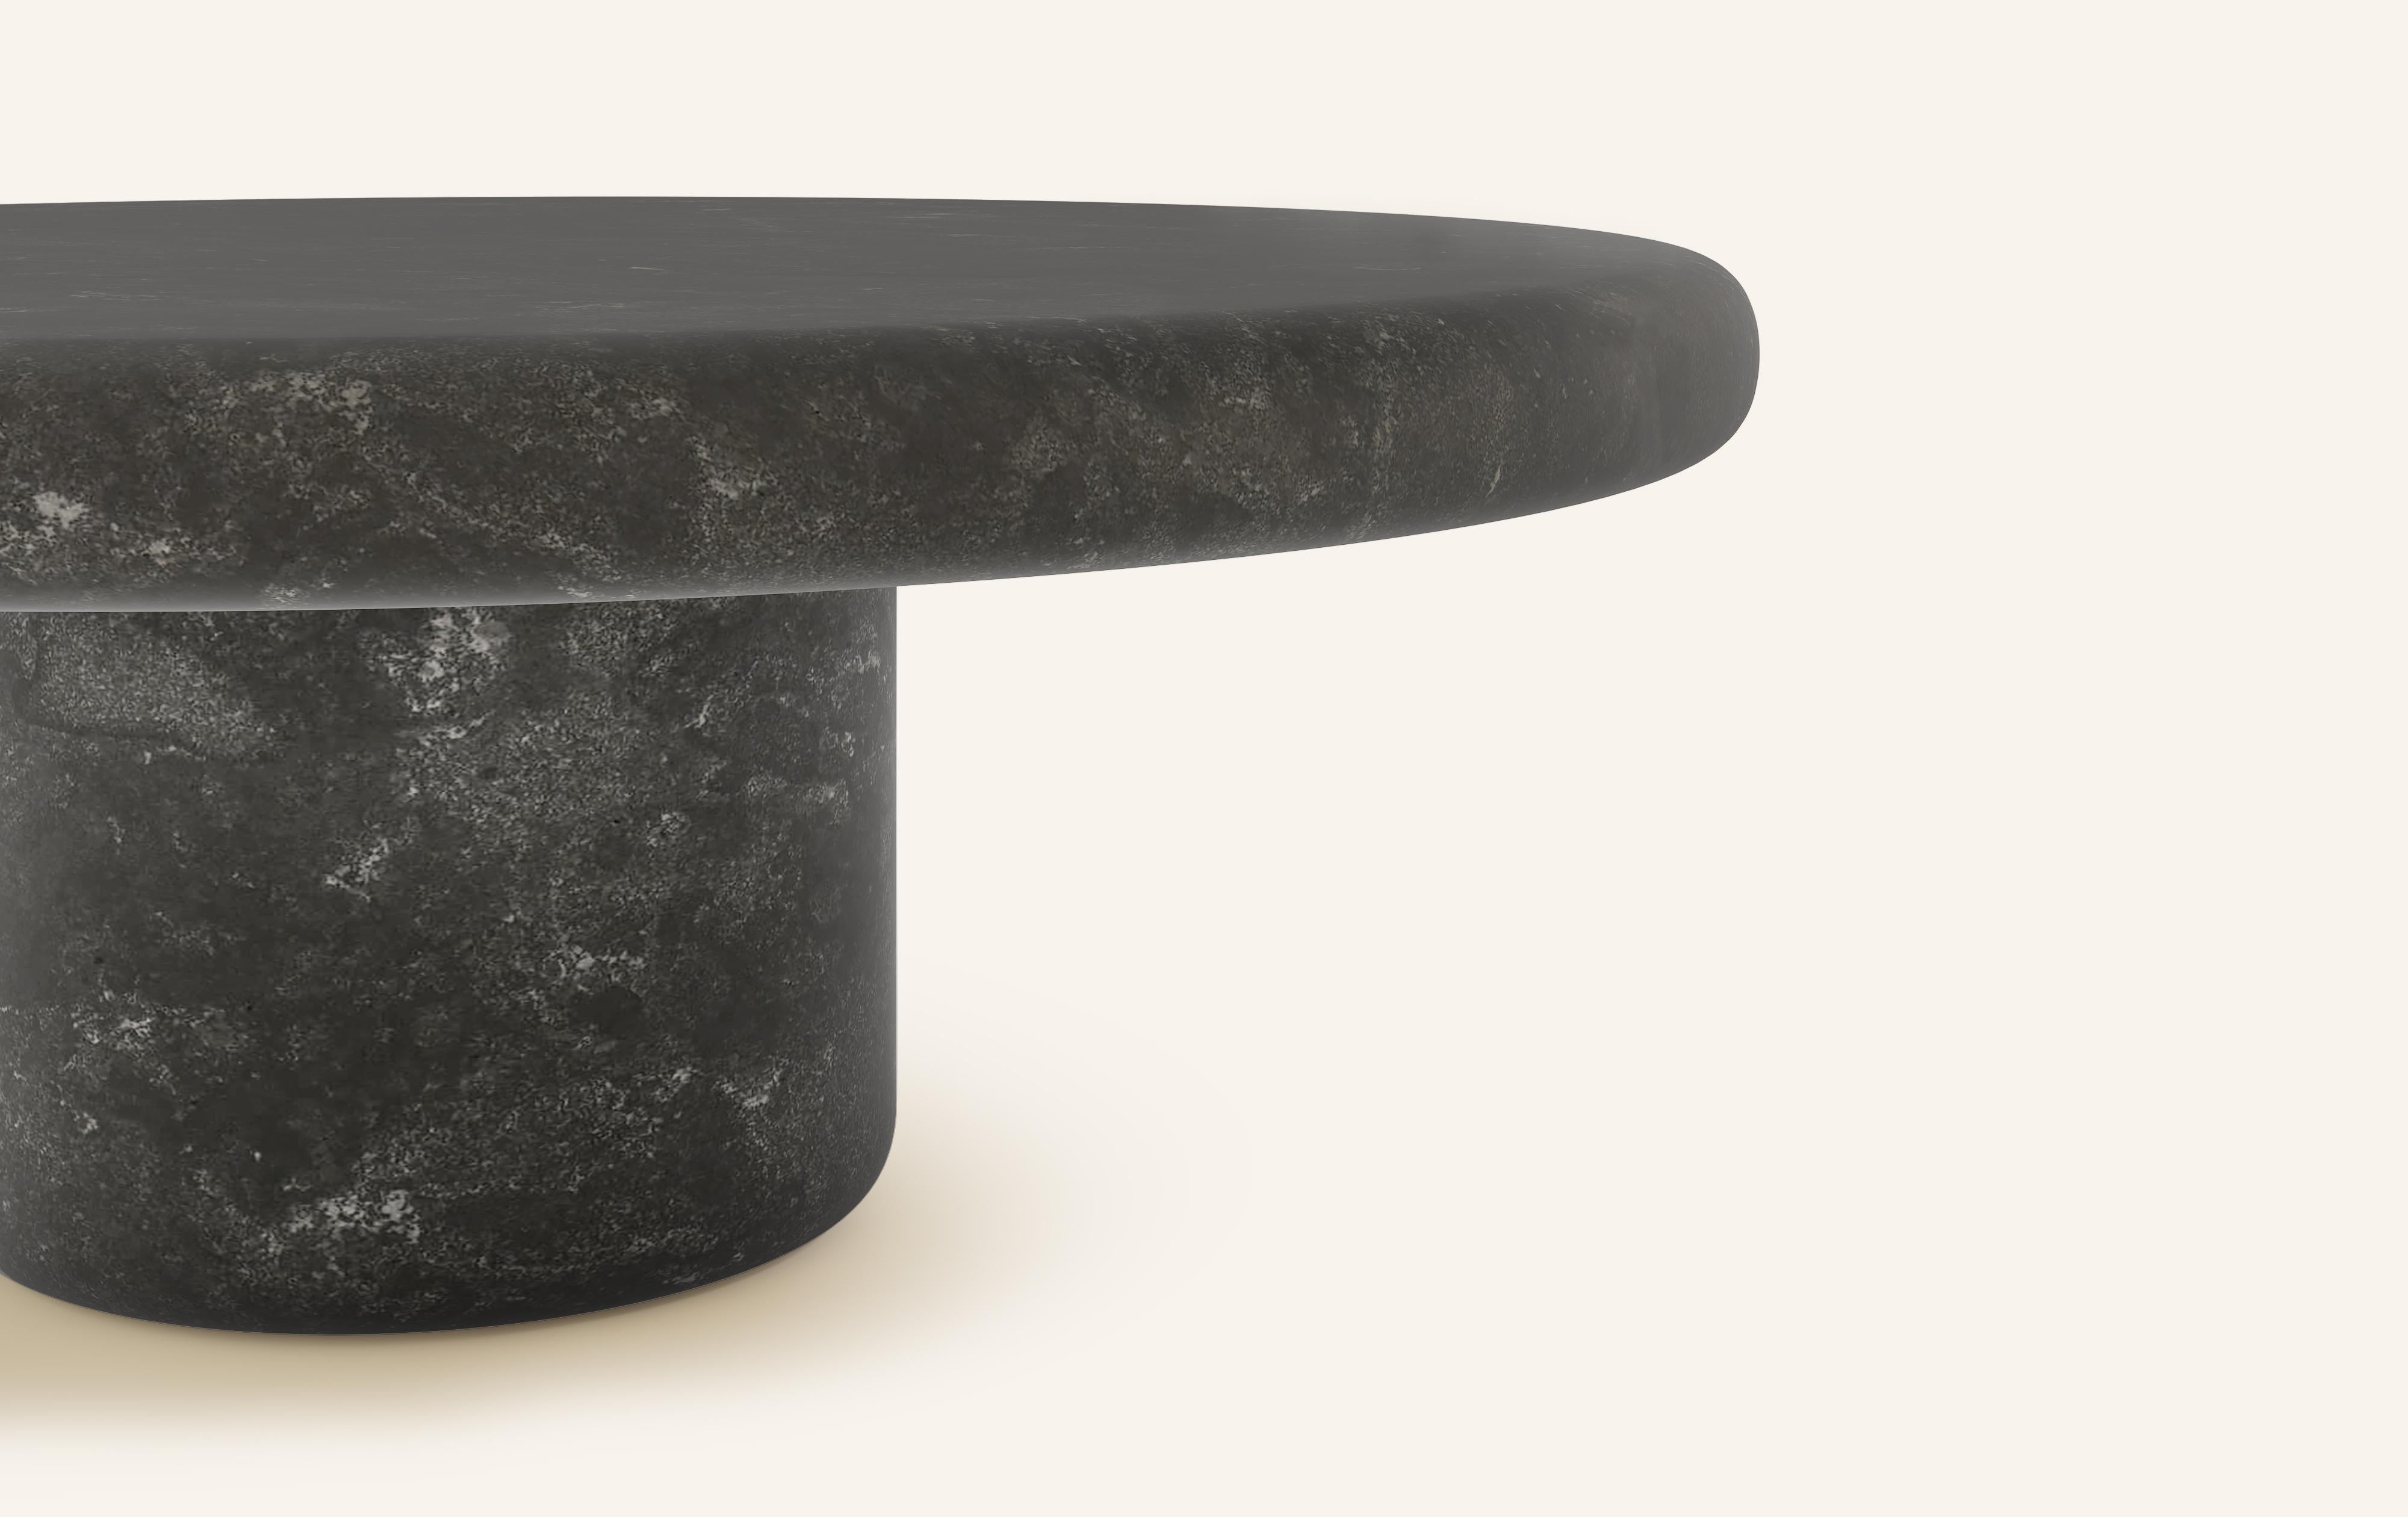 Organic Modern FORM(LA) Luna Round Coffee Table 42”L x 42”W x 15”H Nero Petite Granite For Sale